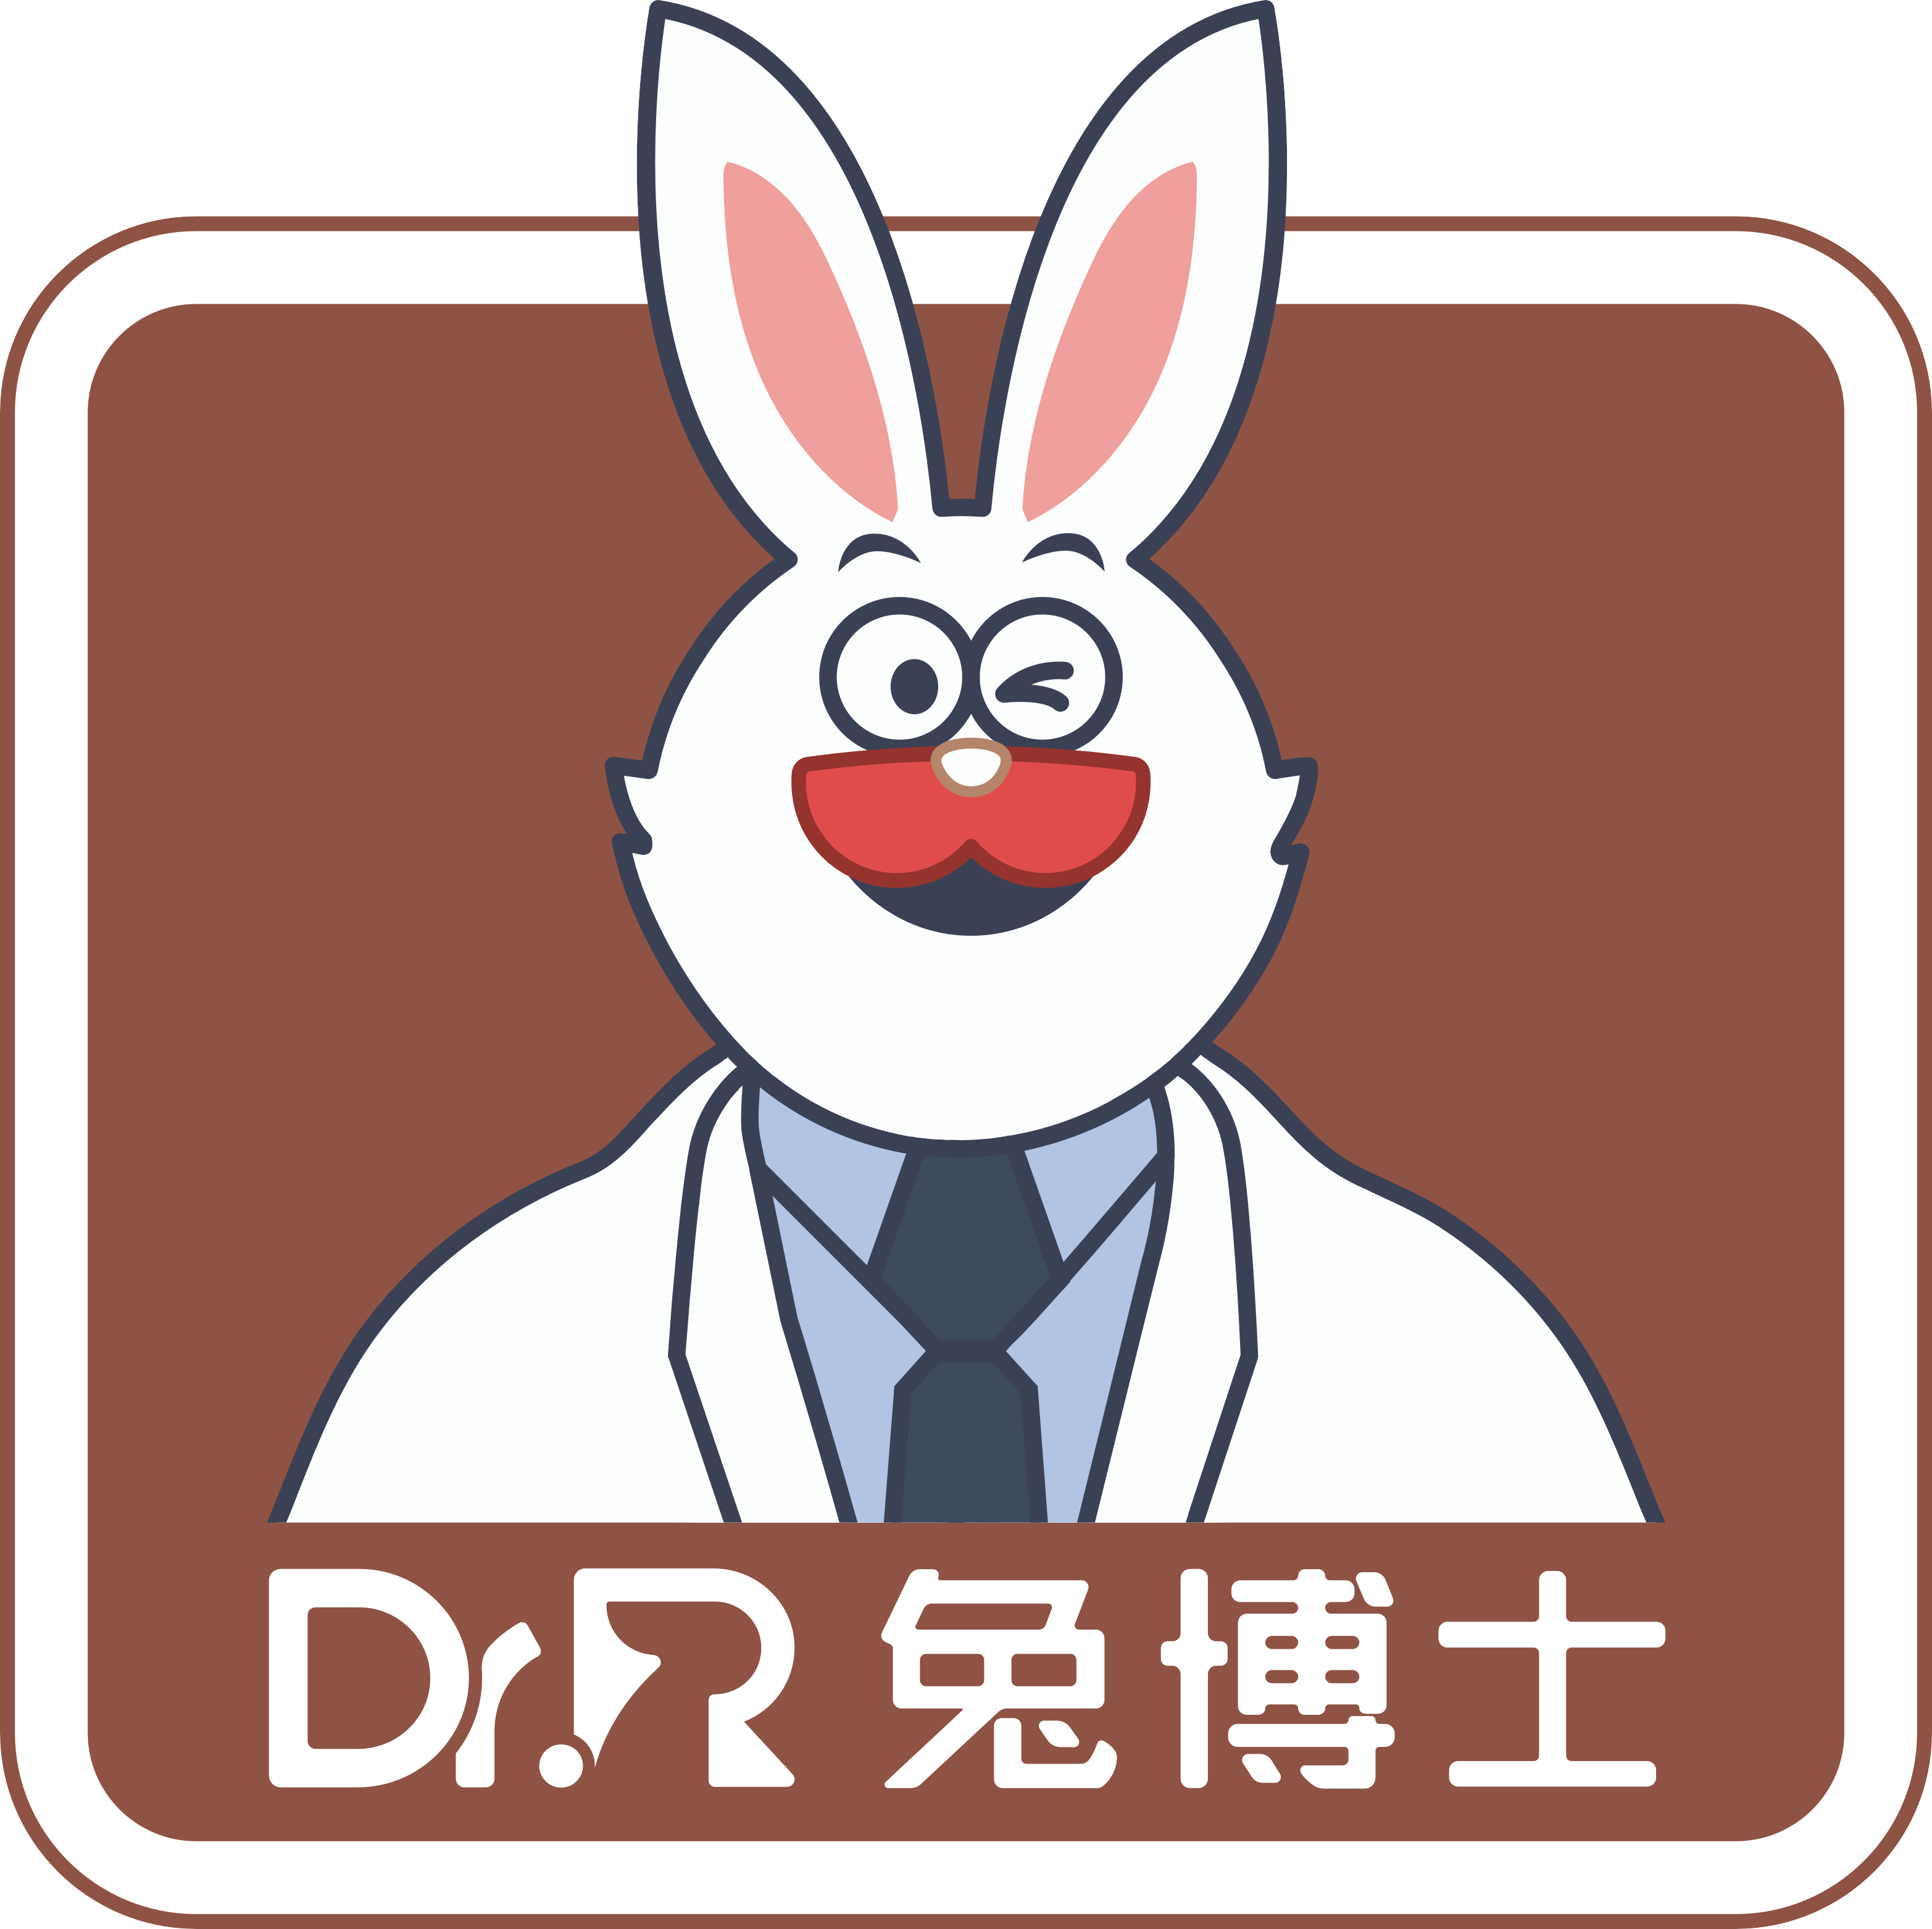 小白兔口腔医疗科技集团股份公司西安长安兔博士口腔医院